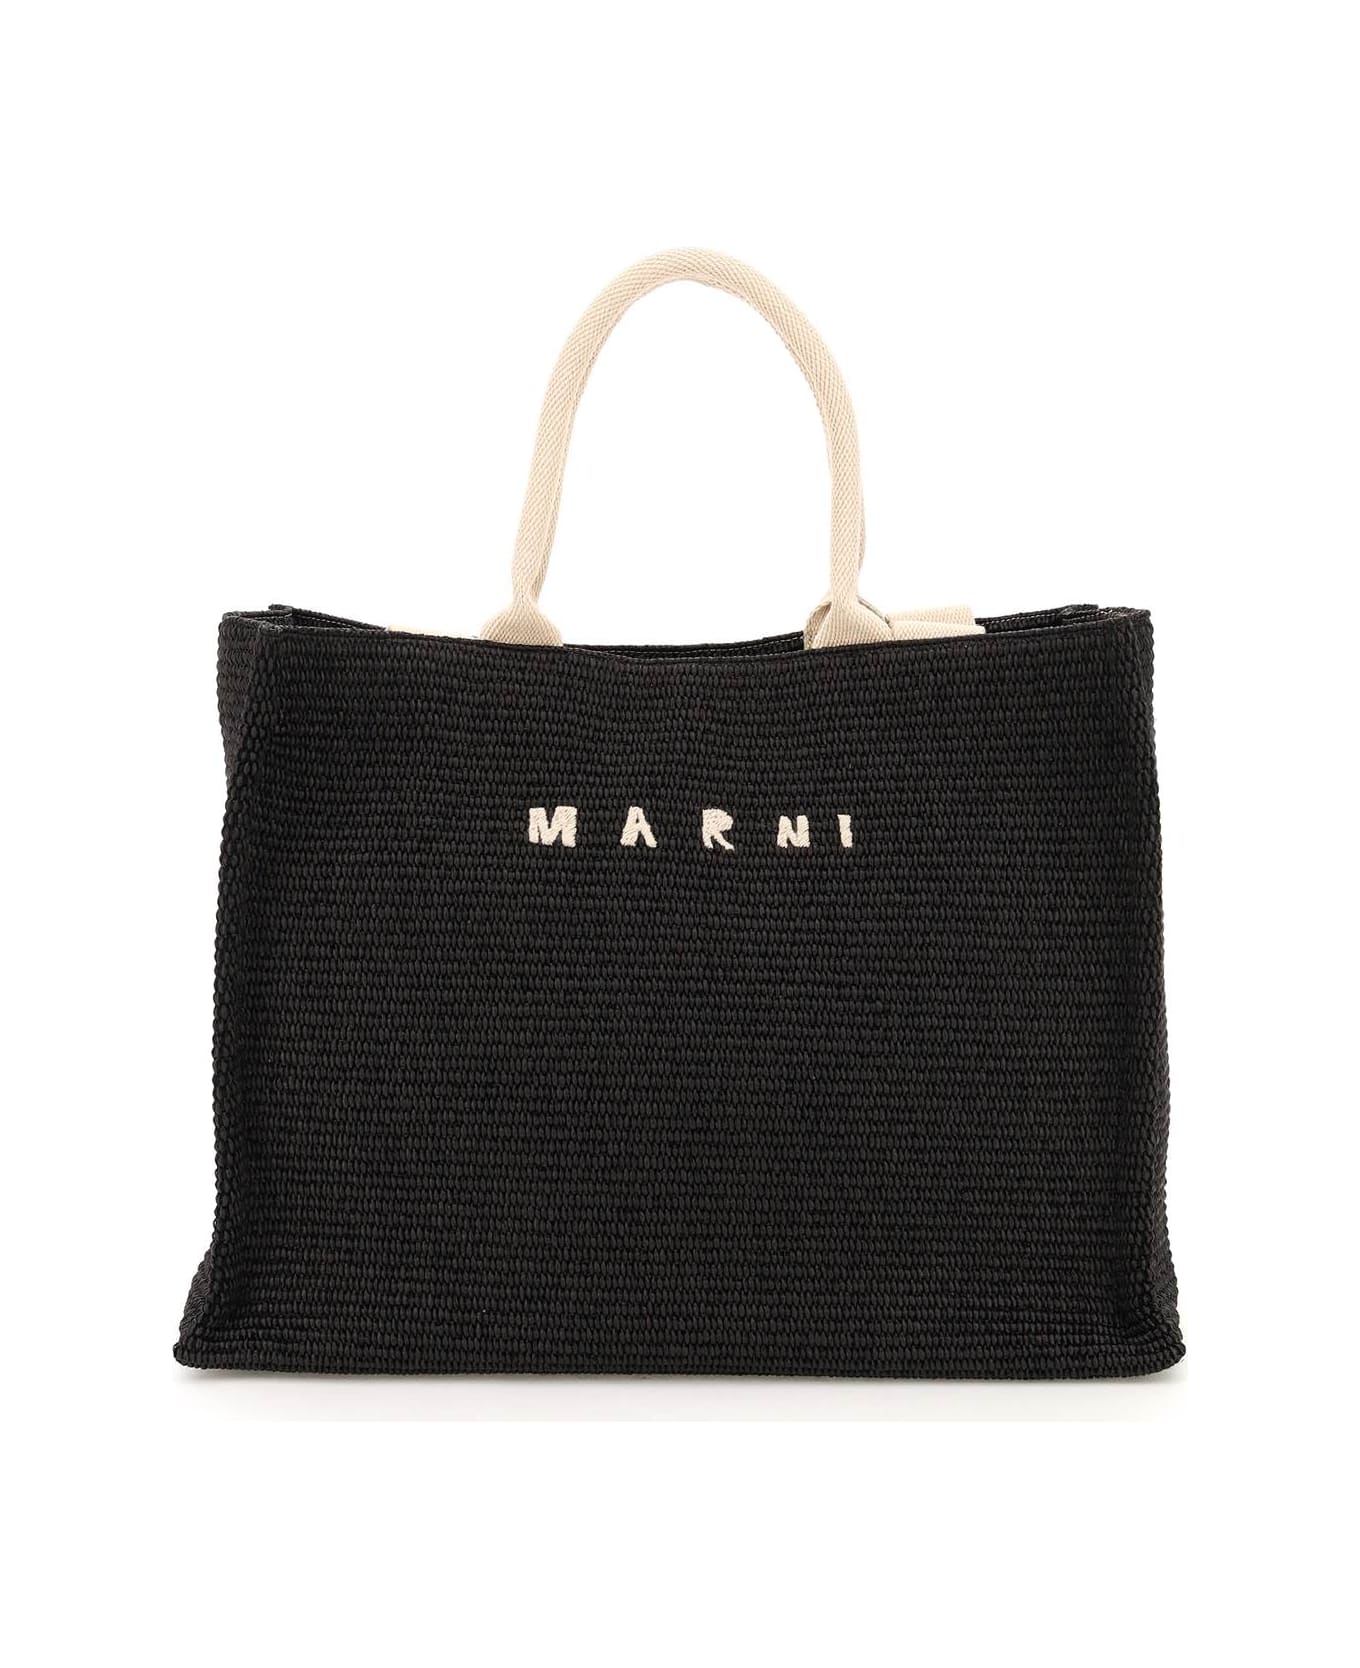 Marni 'tote' Shopping Bag - BLACK NATURAL (Black)